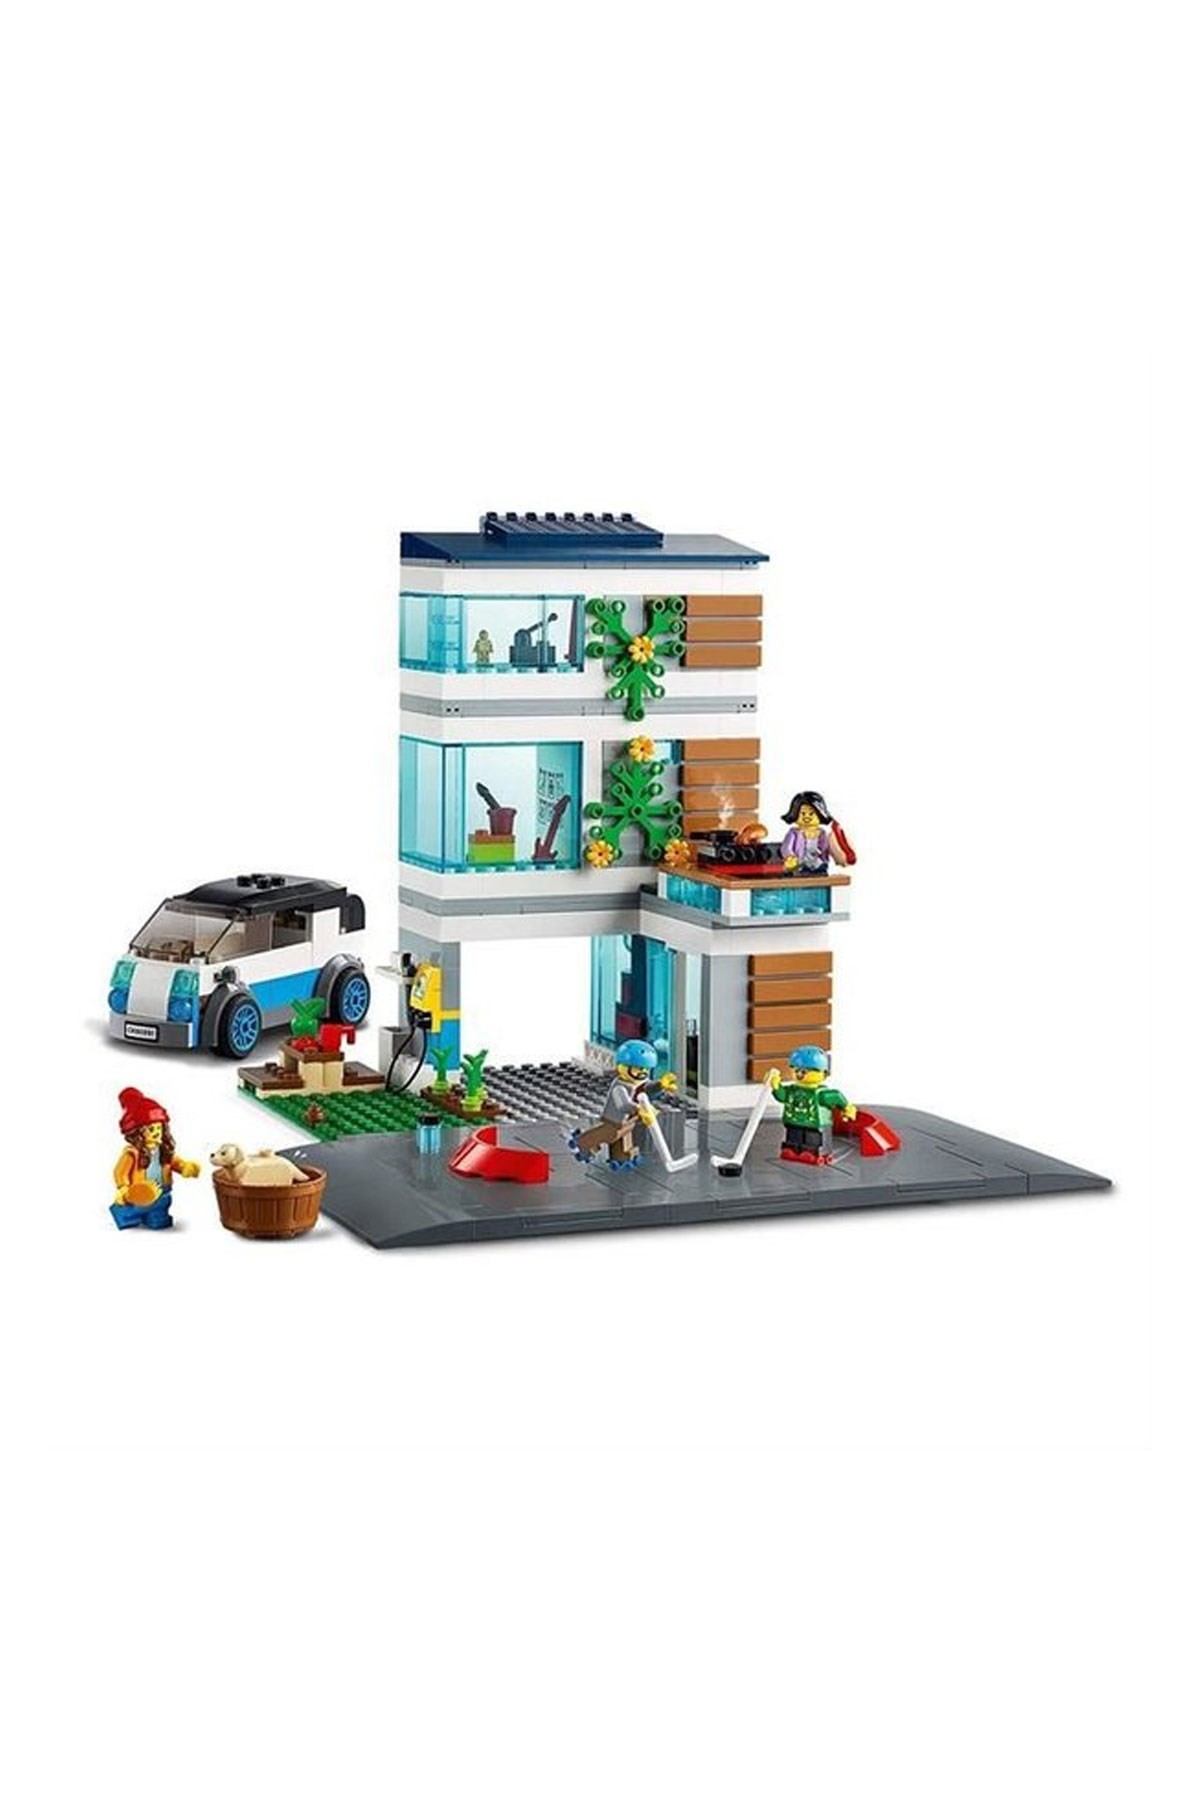 Lego City Modern Aile Evi 60291